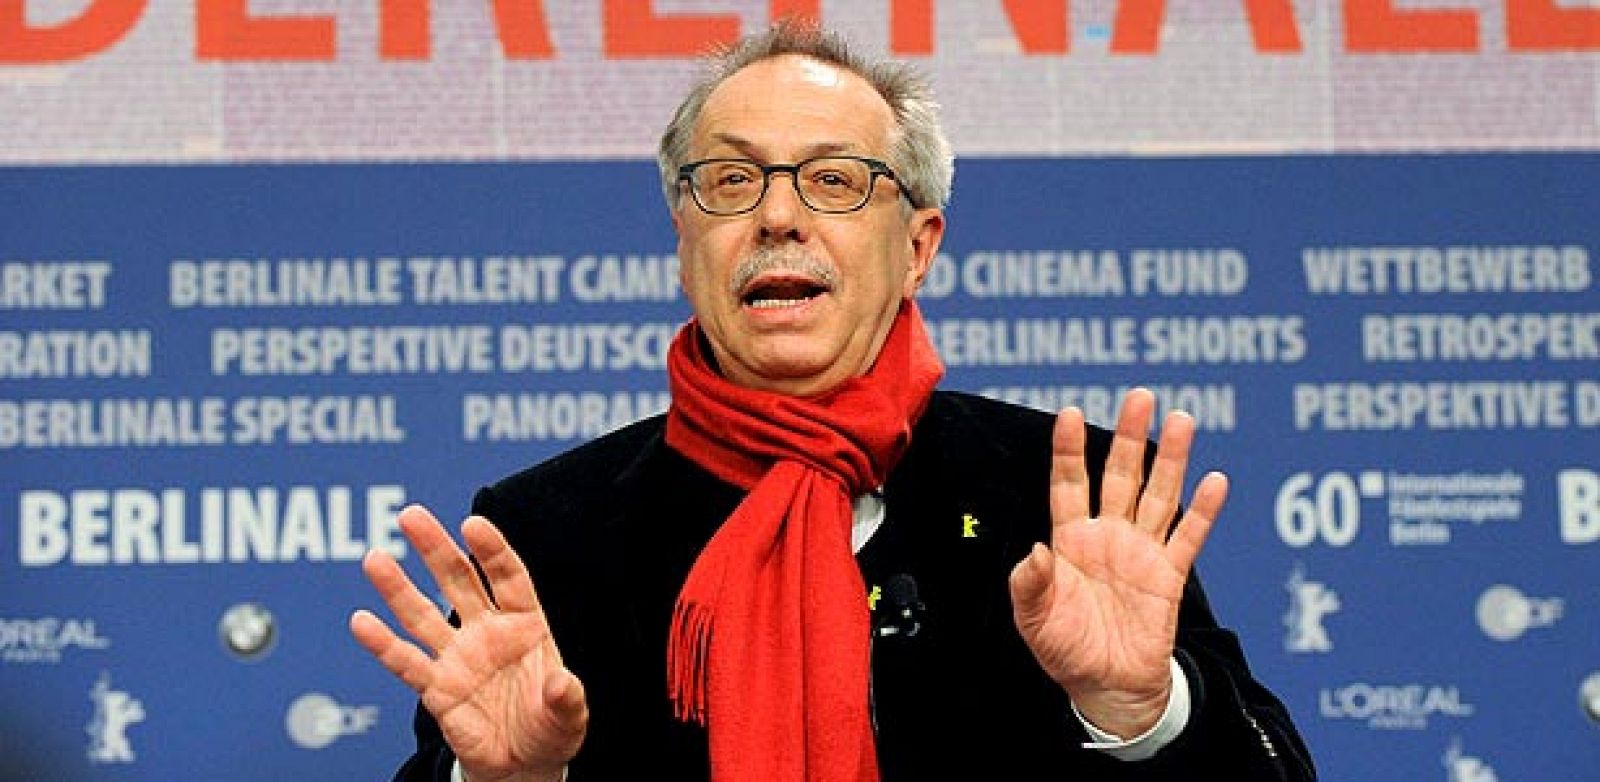 El director del Festival Internacional de Cine de Berlín, Dieter Kosslick, gesticula durante una rueda de prensa de presentación de la 60ª edición de la Berlinale, en la capital alemana